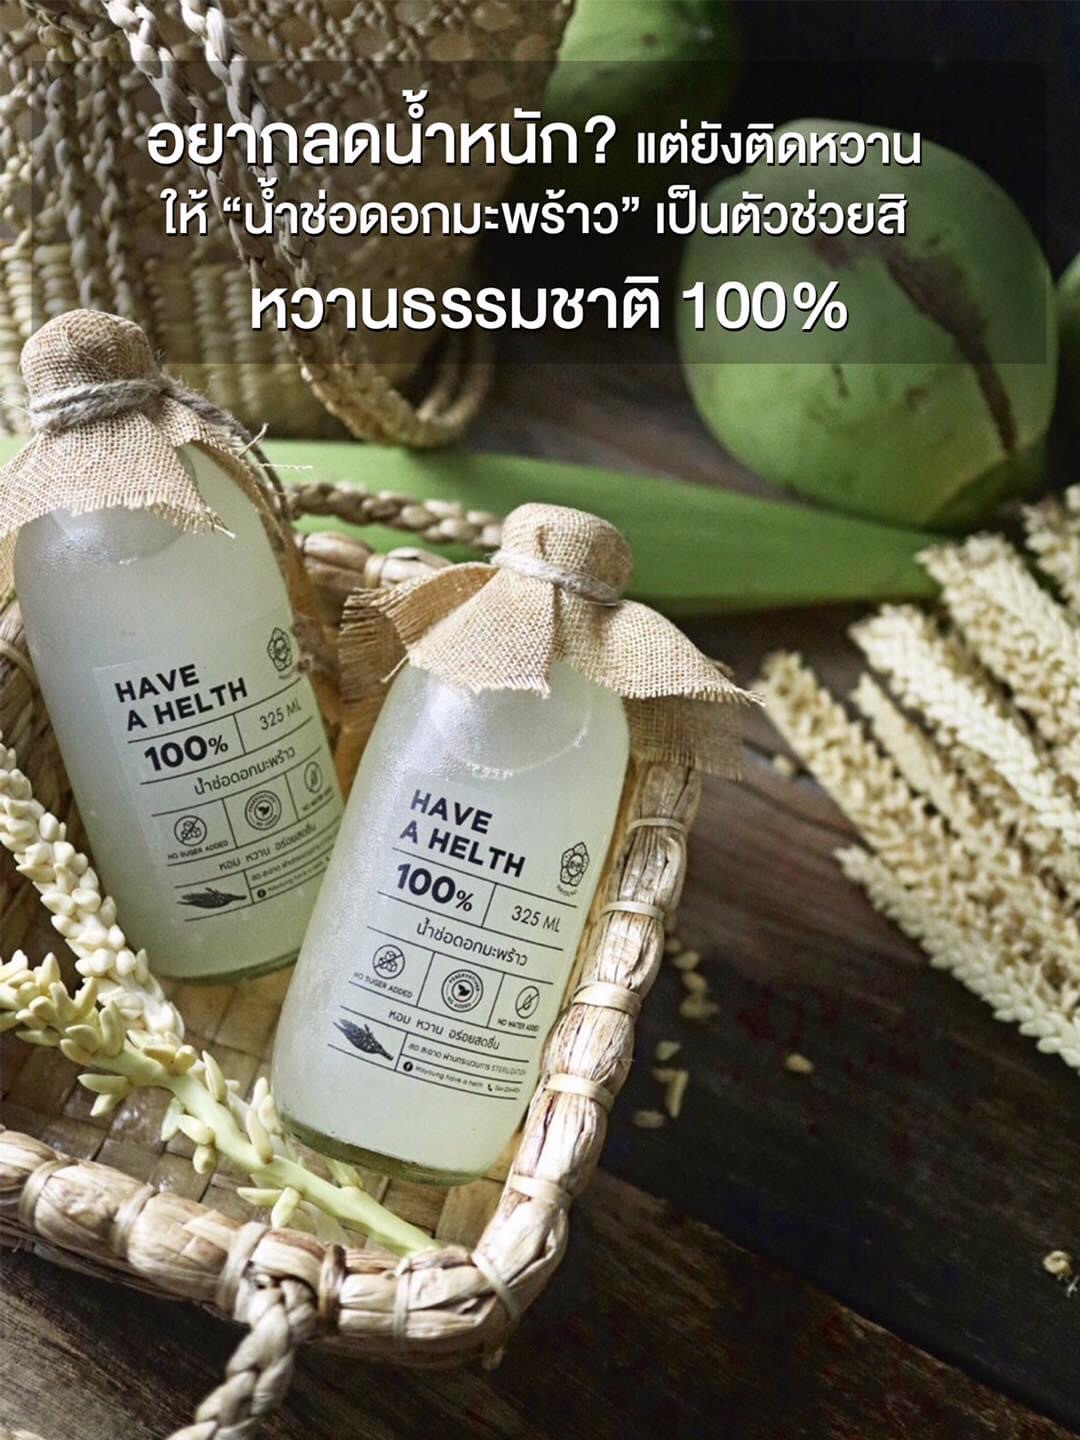 ??????? ???? ? ?????? น้ำช่อดอกมะพร้าวคุณภาพ100% Coconut syrup เครื่องดื่มสุขภาพ ไม่มีน้ำตาล หอมสดชื่น